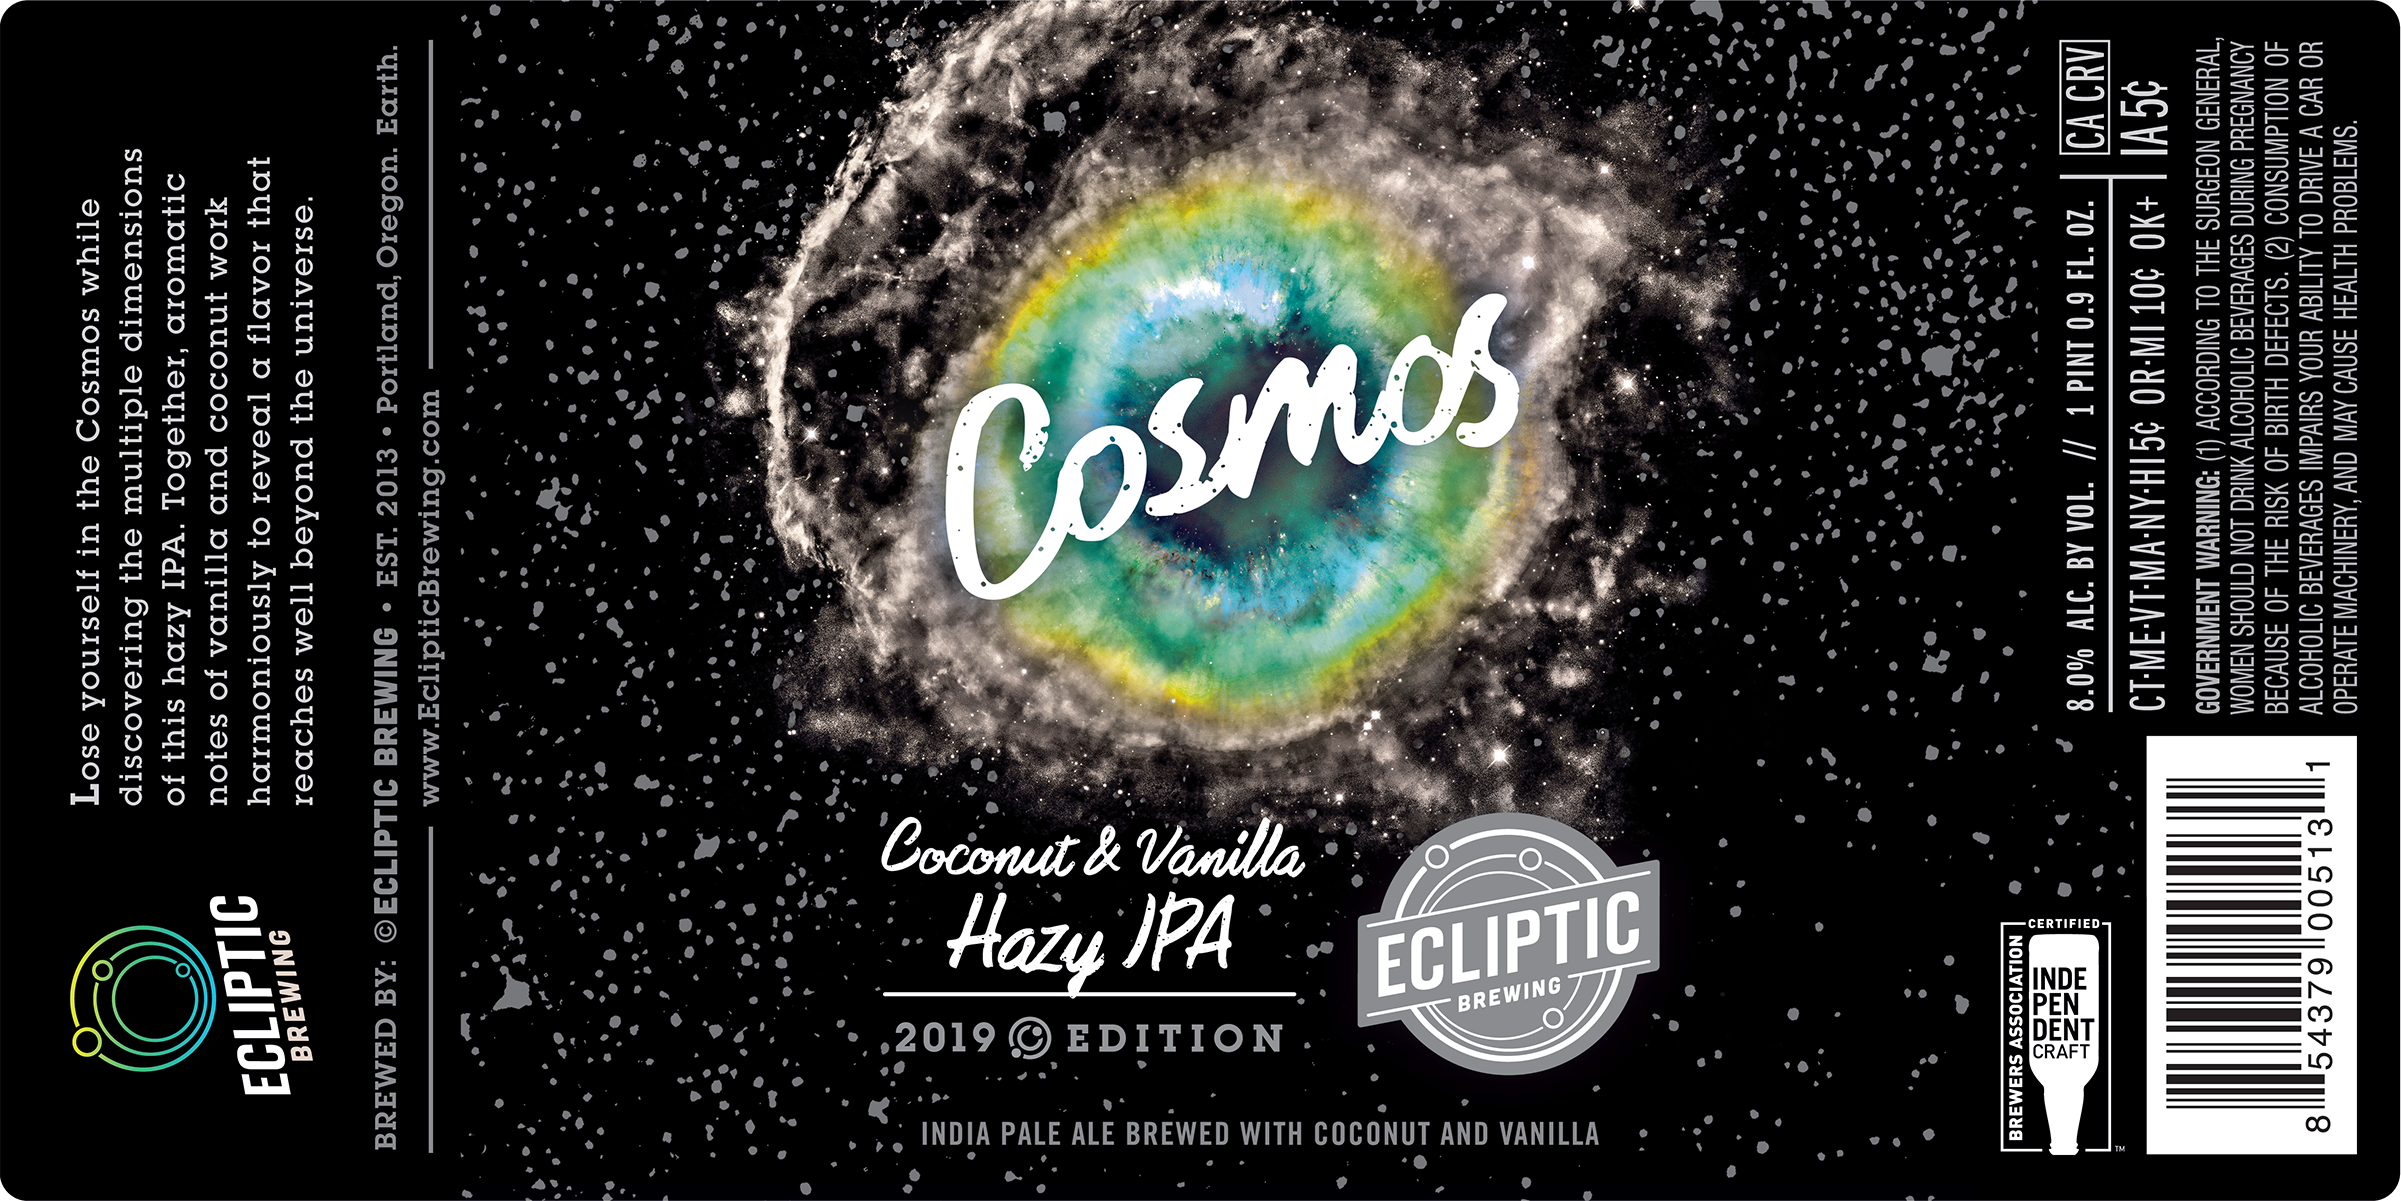 Ecliptic Brewing Cosmos Coconut & Vanilla Hazy IPA Label